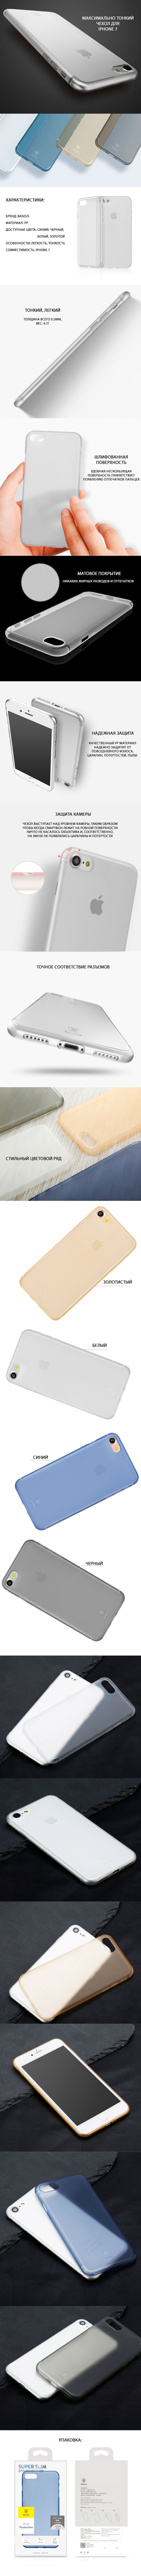 Накладка Baseus Slim для iPhone 7 - особенности, фото обзор